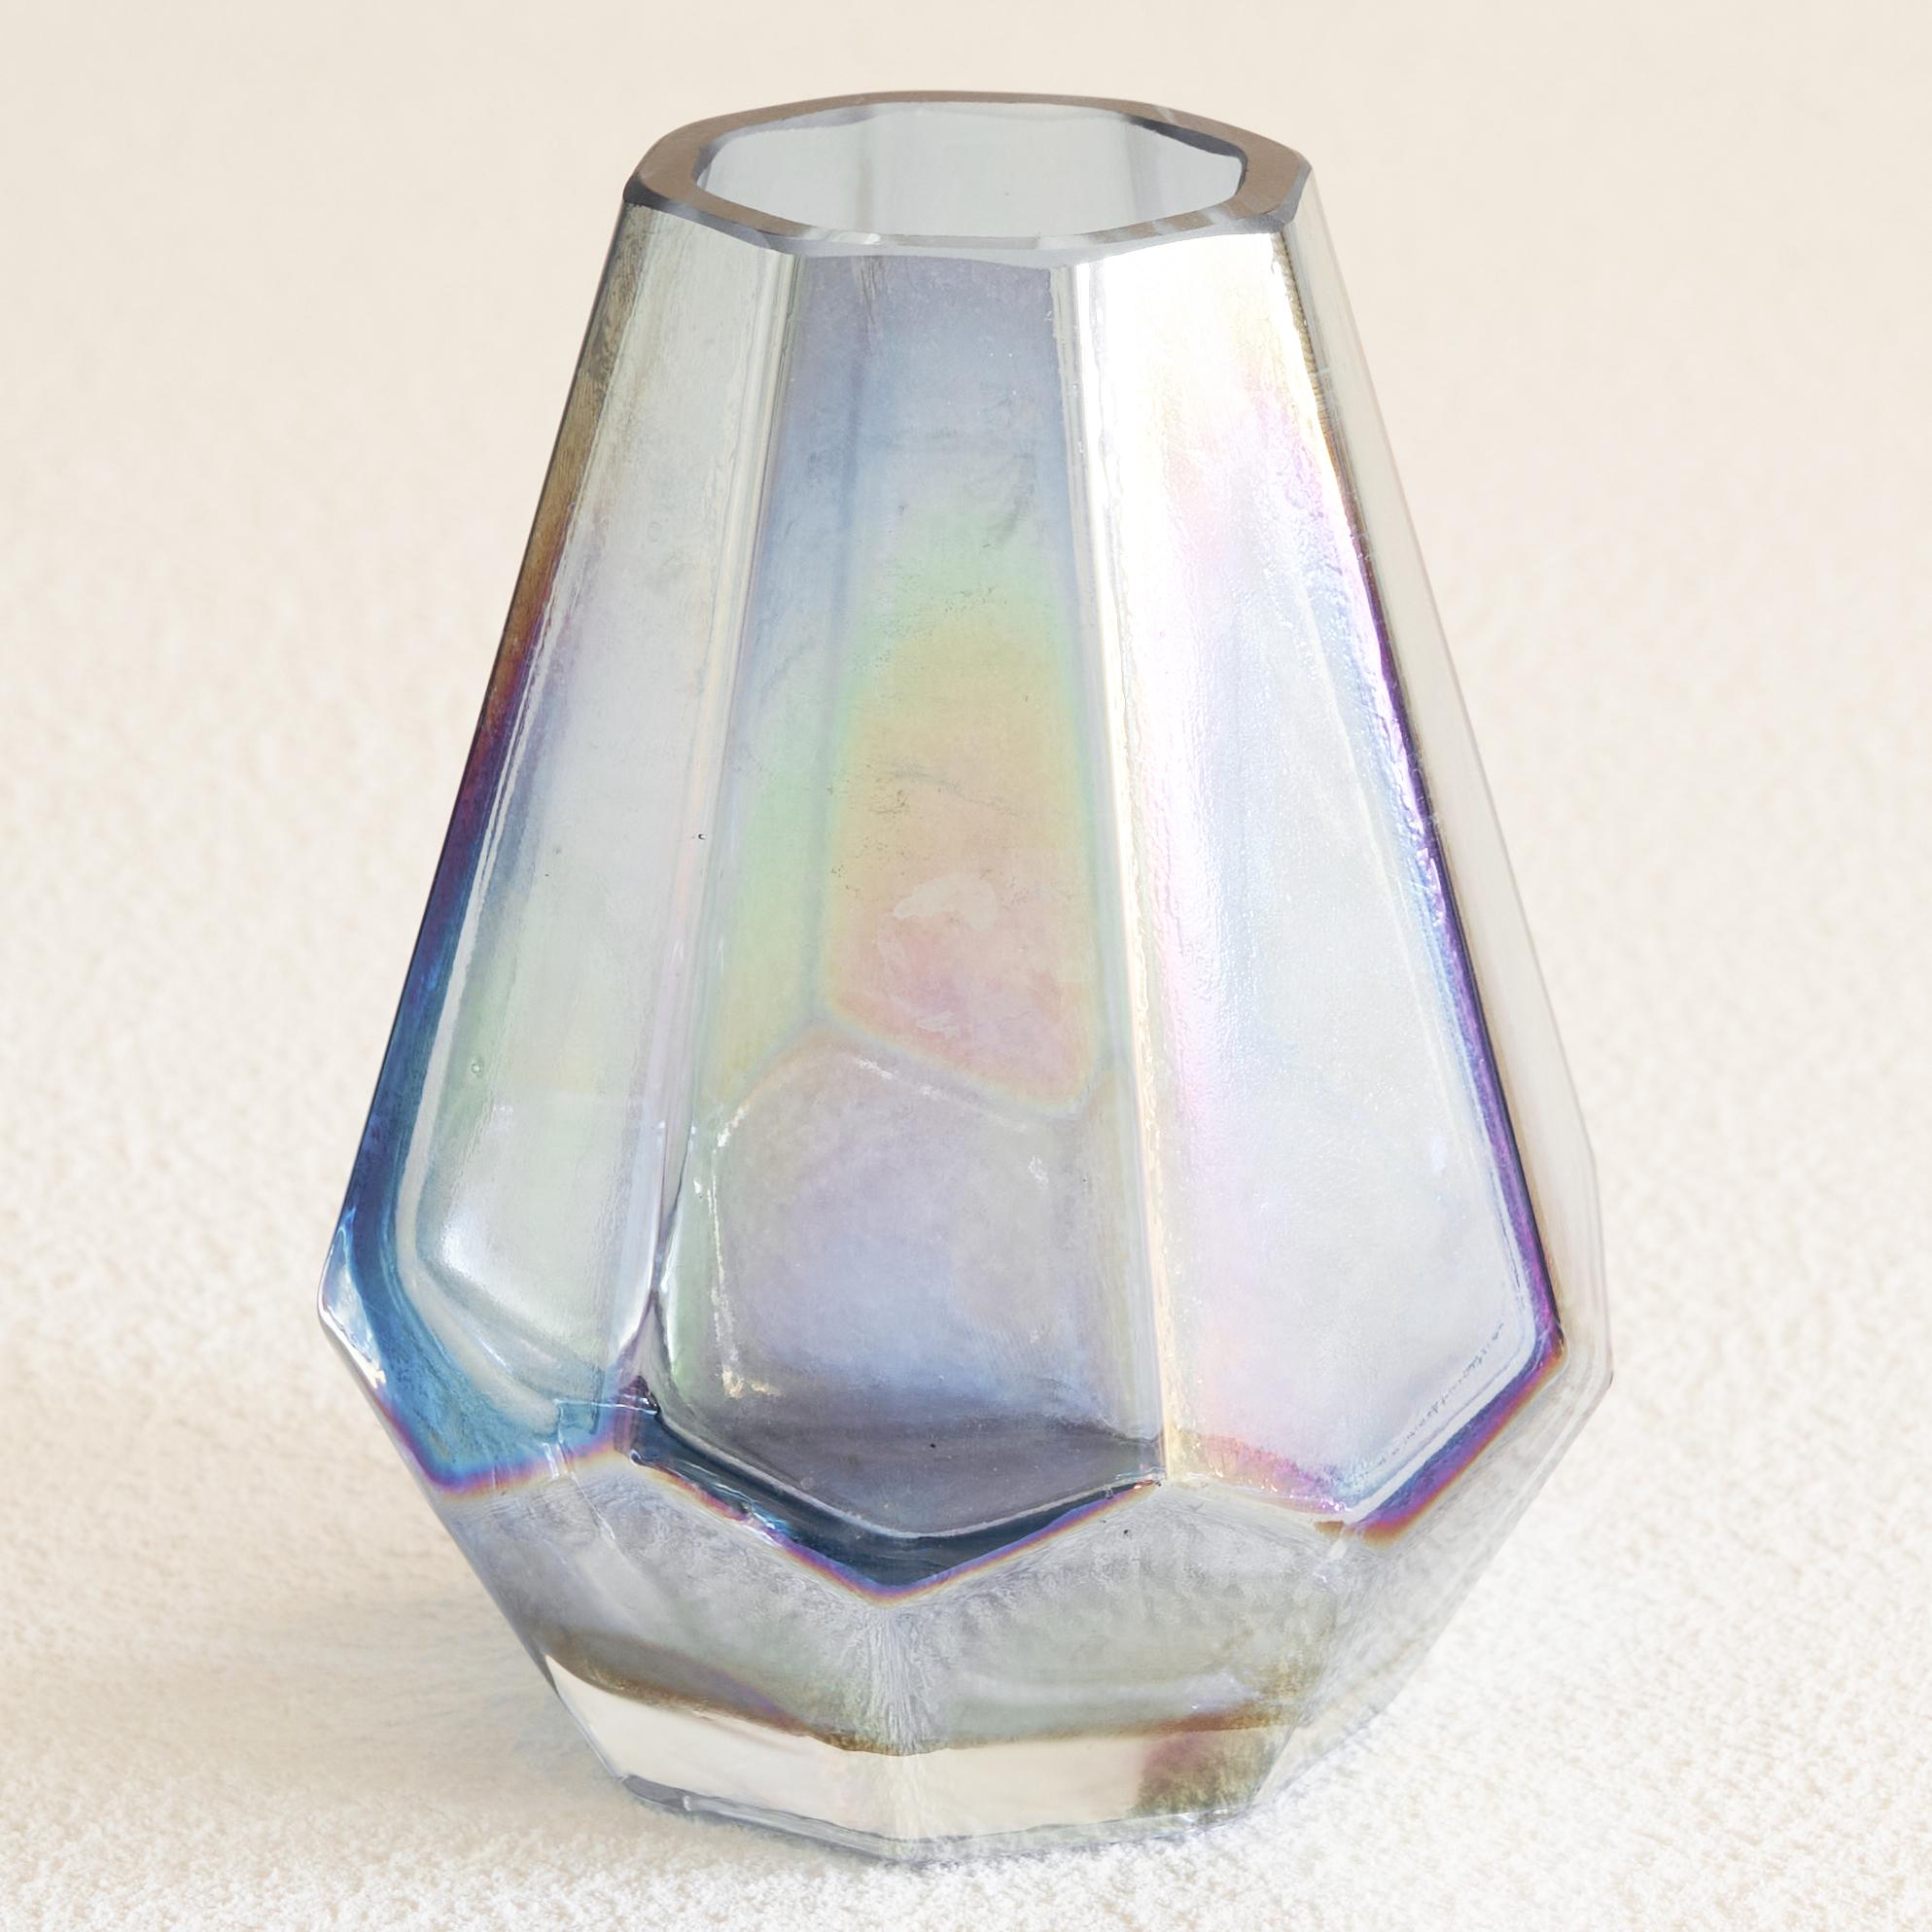 Vase en verre irisé Art Déco 1930.

Il s'agit d'un vase très distinct et unique en verre pressé irisé de la période art déco. Ce vase octogonal en verre a une forme de base magnifique, mais la caractéristique la plus intéressante de ce vase en verre